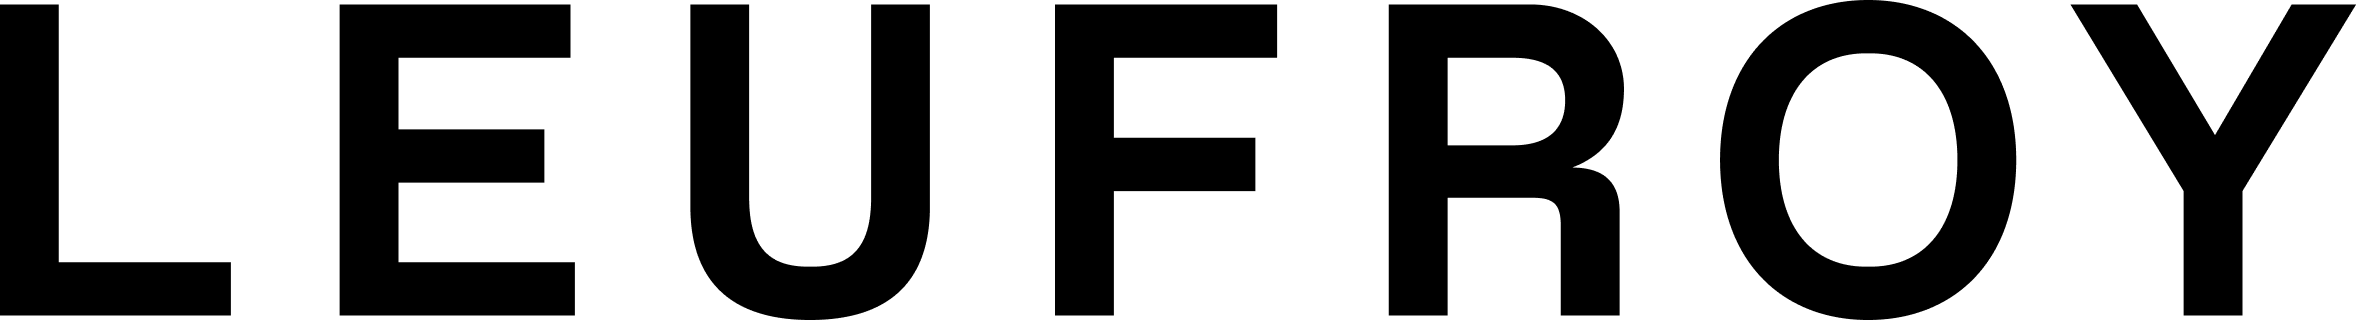 logo for Leufroy